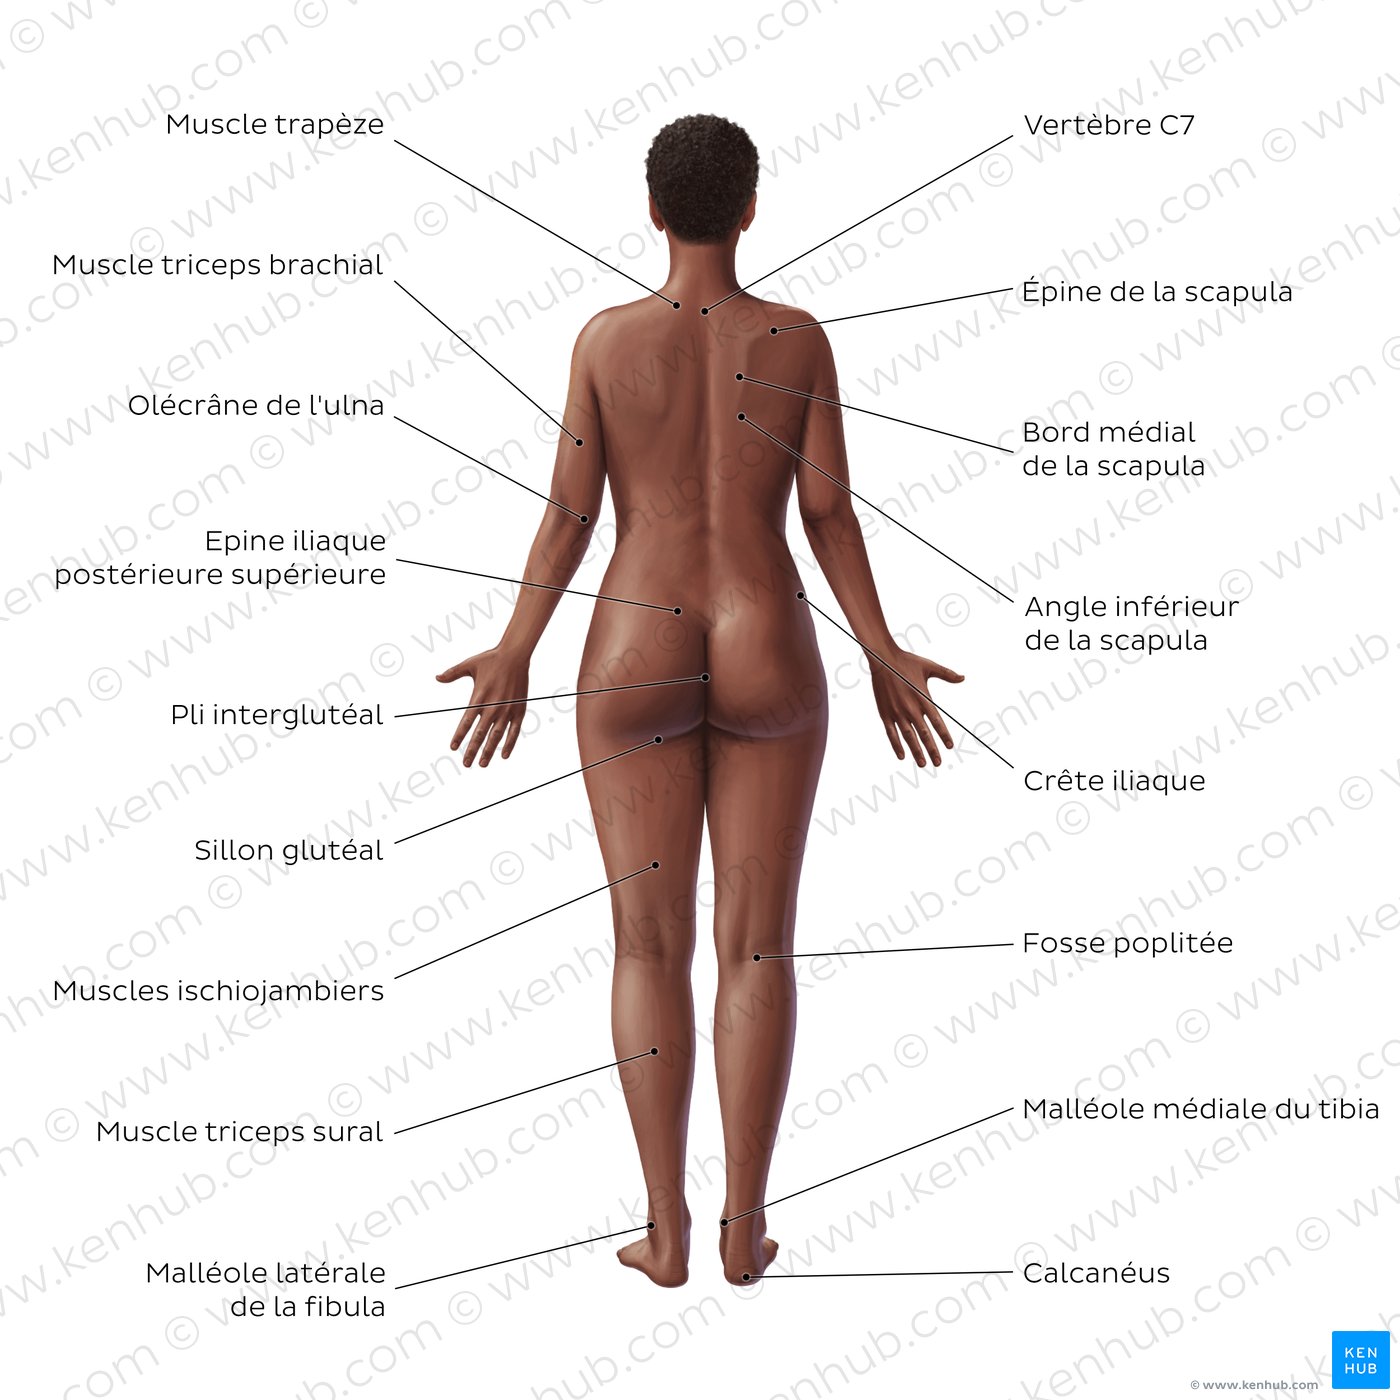 Anatomie de surface du corps féminin (vue postérieure)